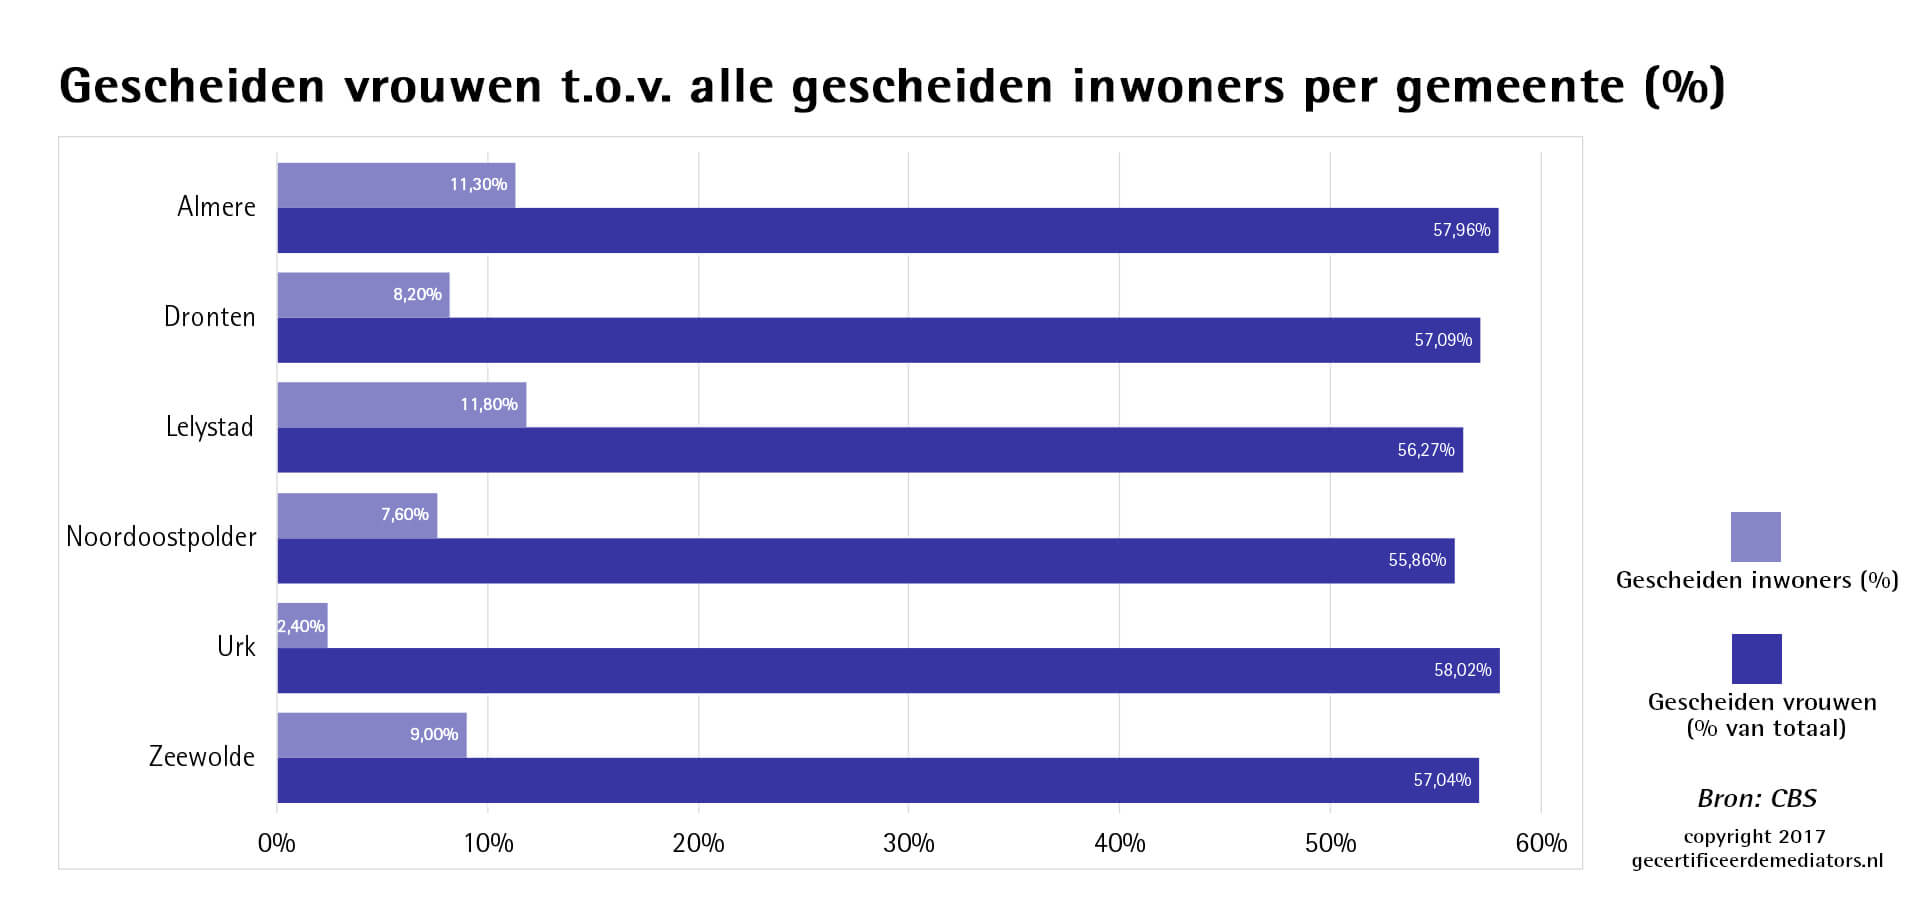 Scheidingen per gemeente in Flevoland